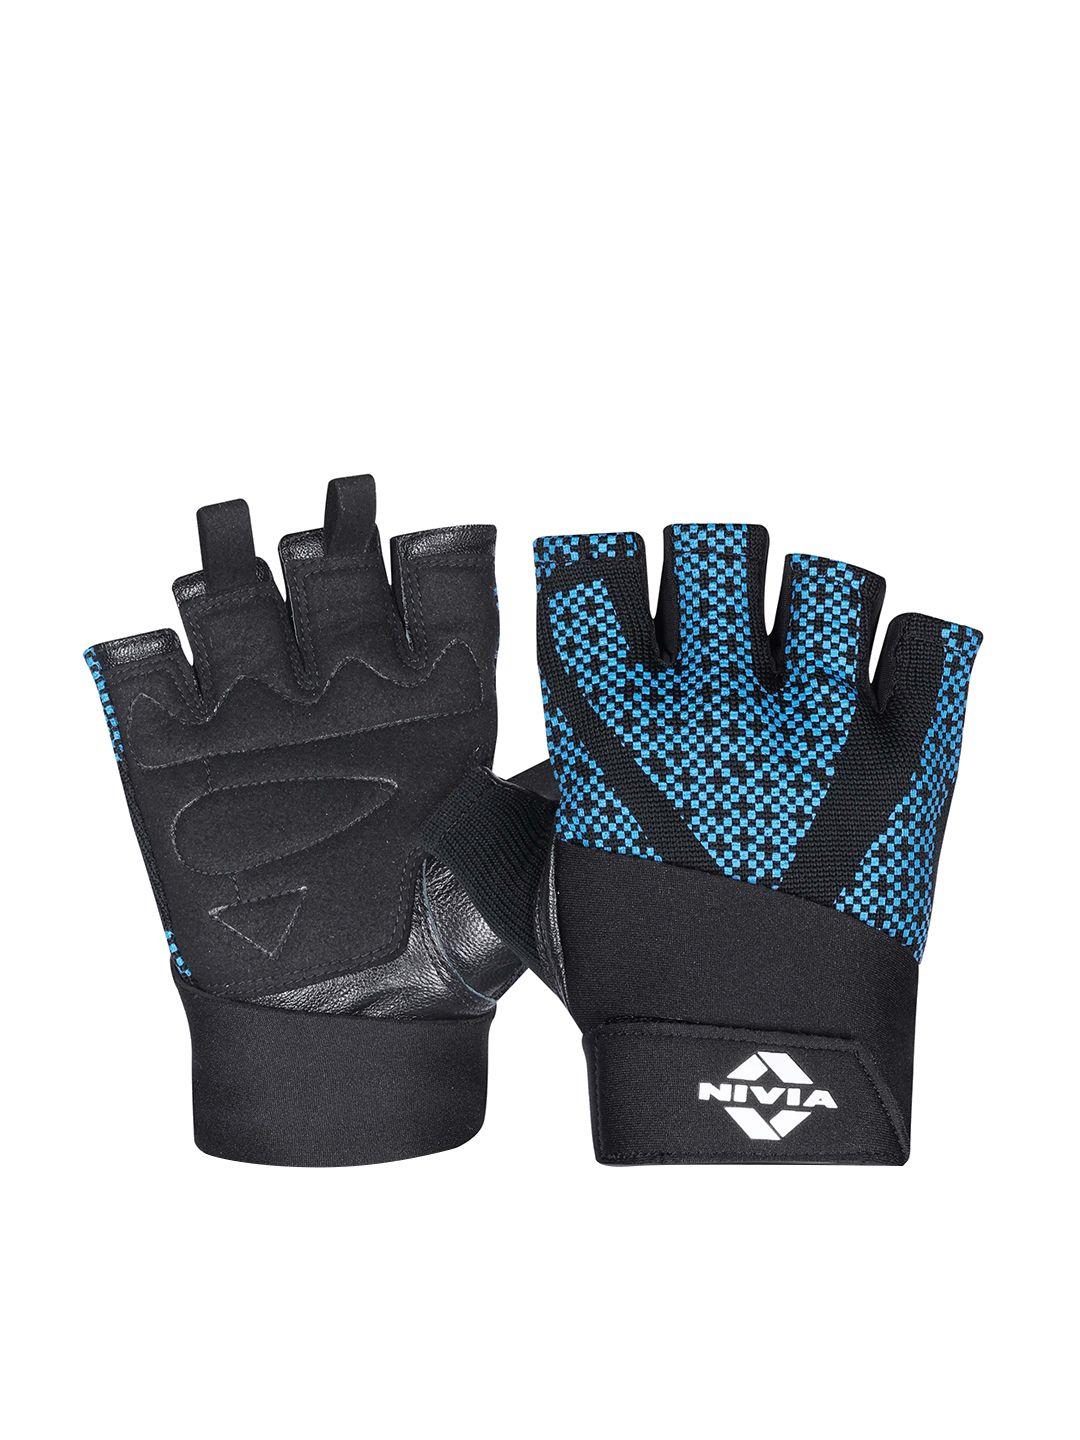 nivia blue & black printed weightlifting gloves